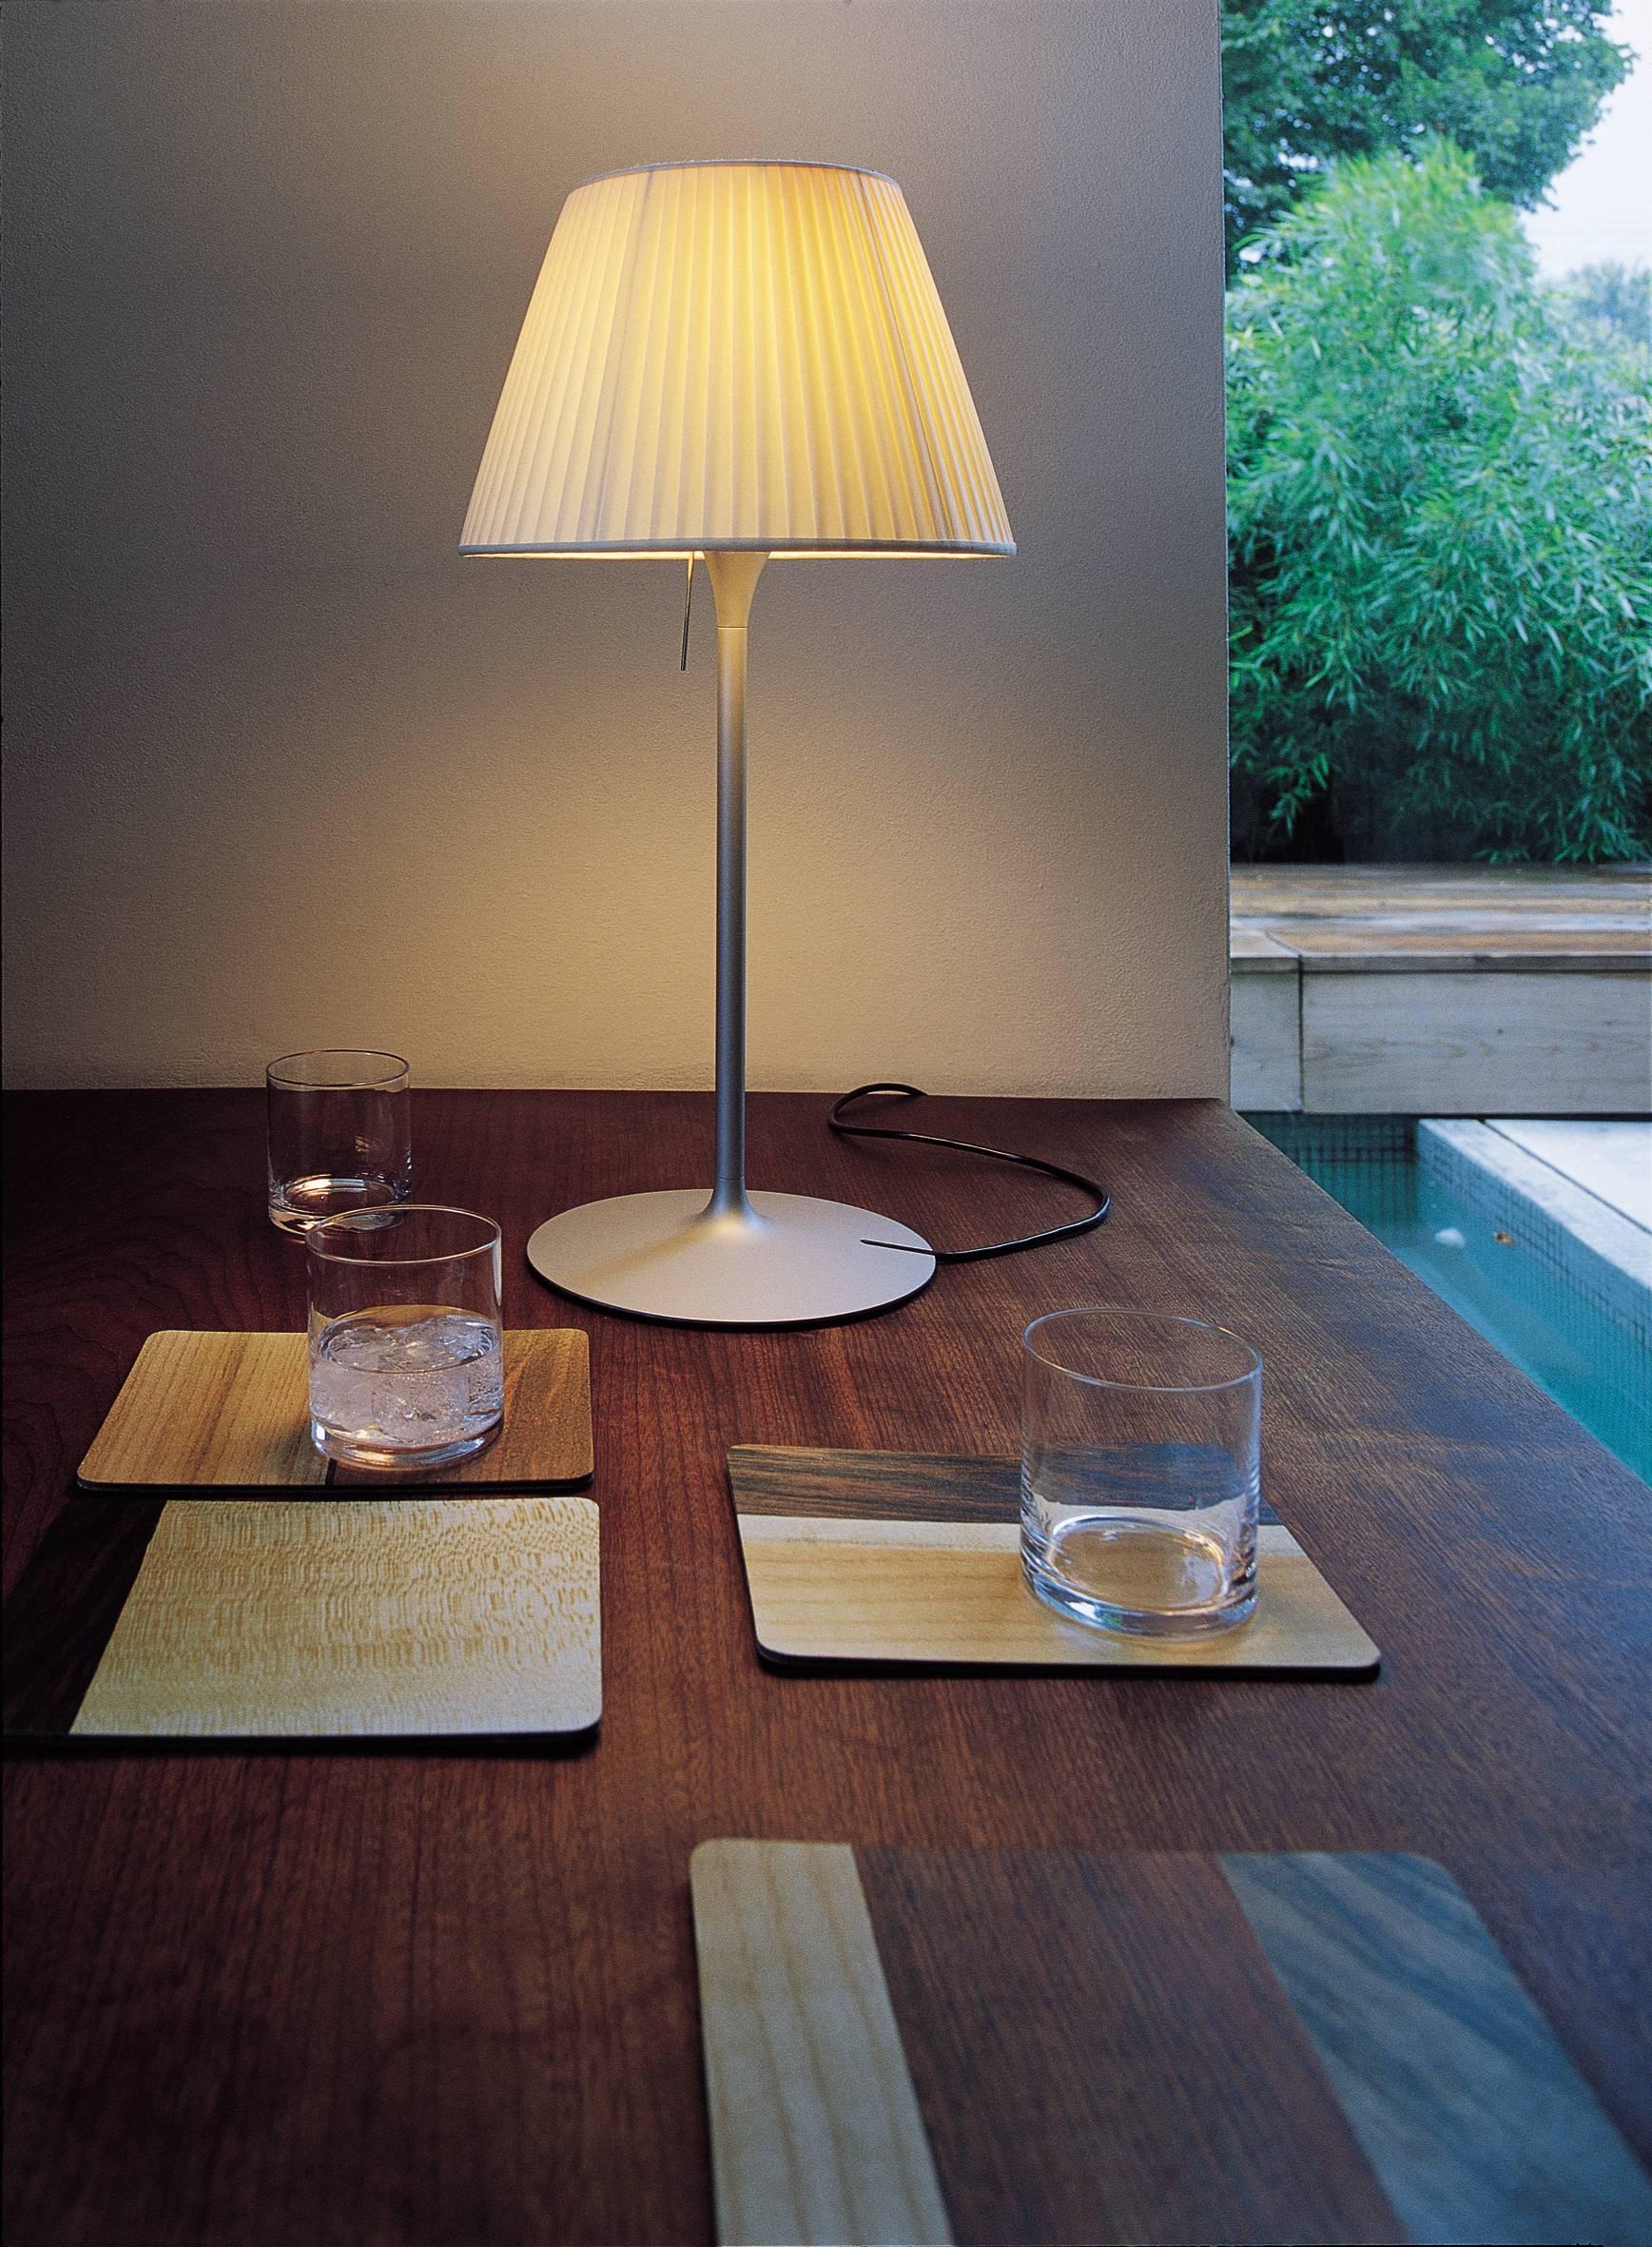 Faisant partie de la famille Romeo créée par l'innovateur Philippe Starck, cette lampe de table étonnante et d'une simplicité saisissante fournit une lumière diffuse grâce à un abat-jour en tissu plissé et un diffuseur interne en verre borosilicate